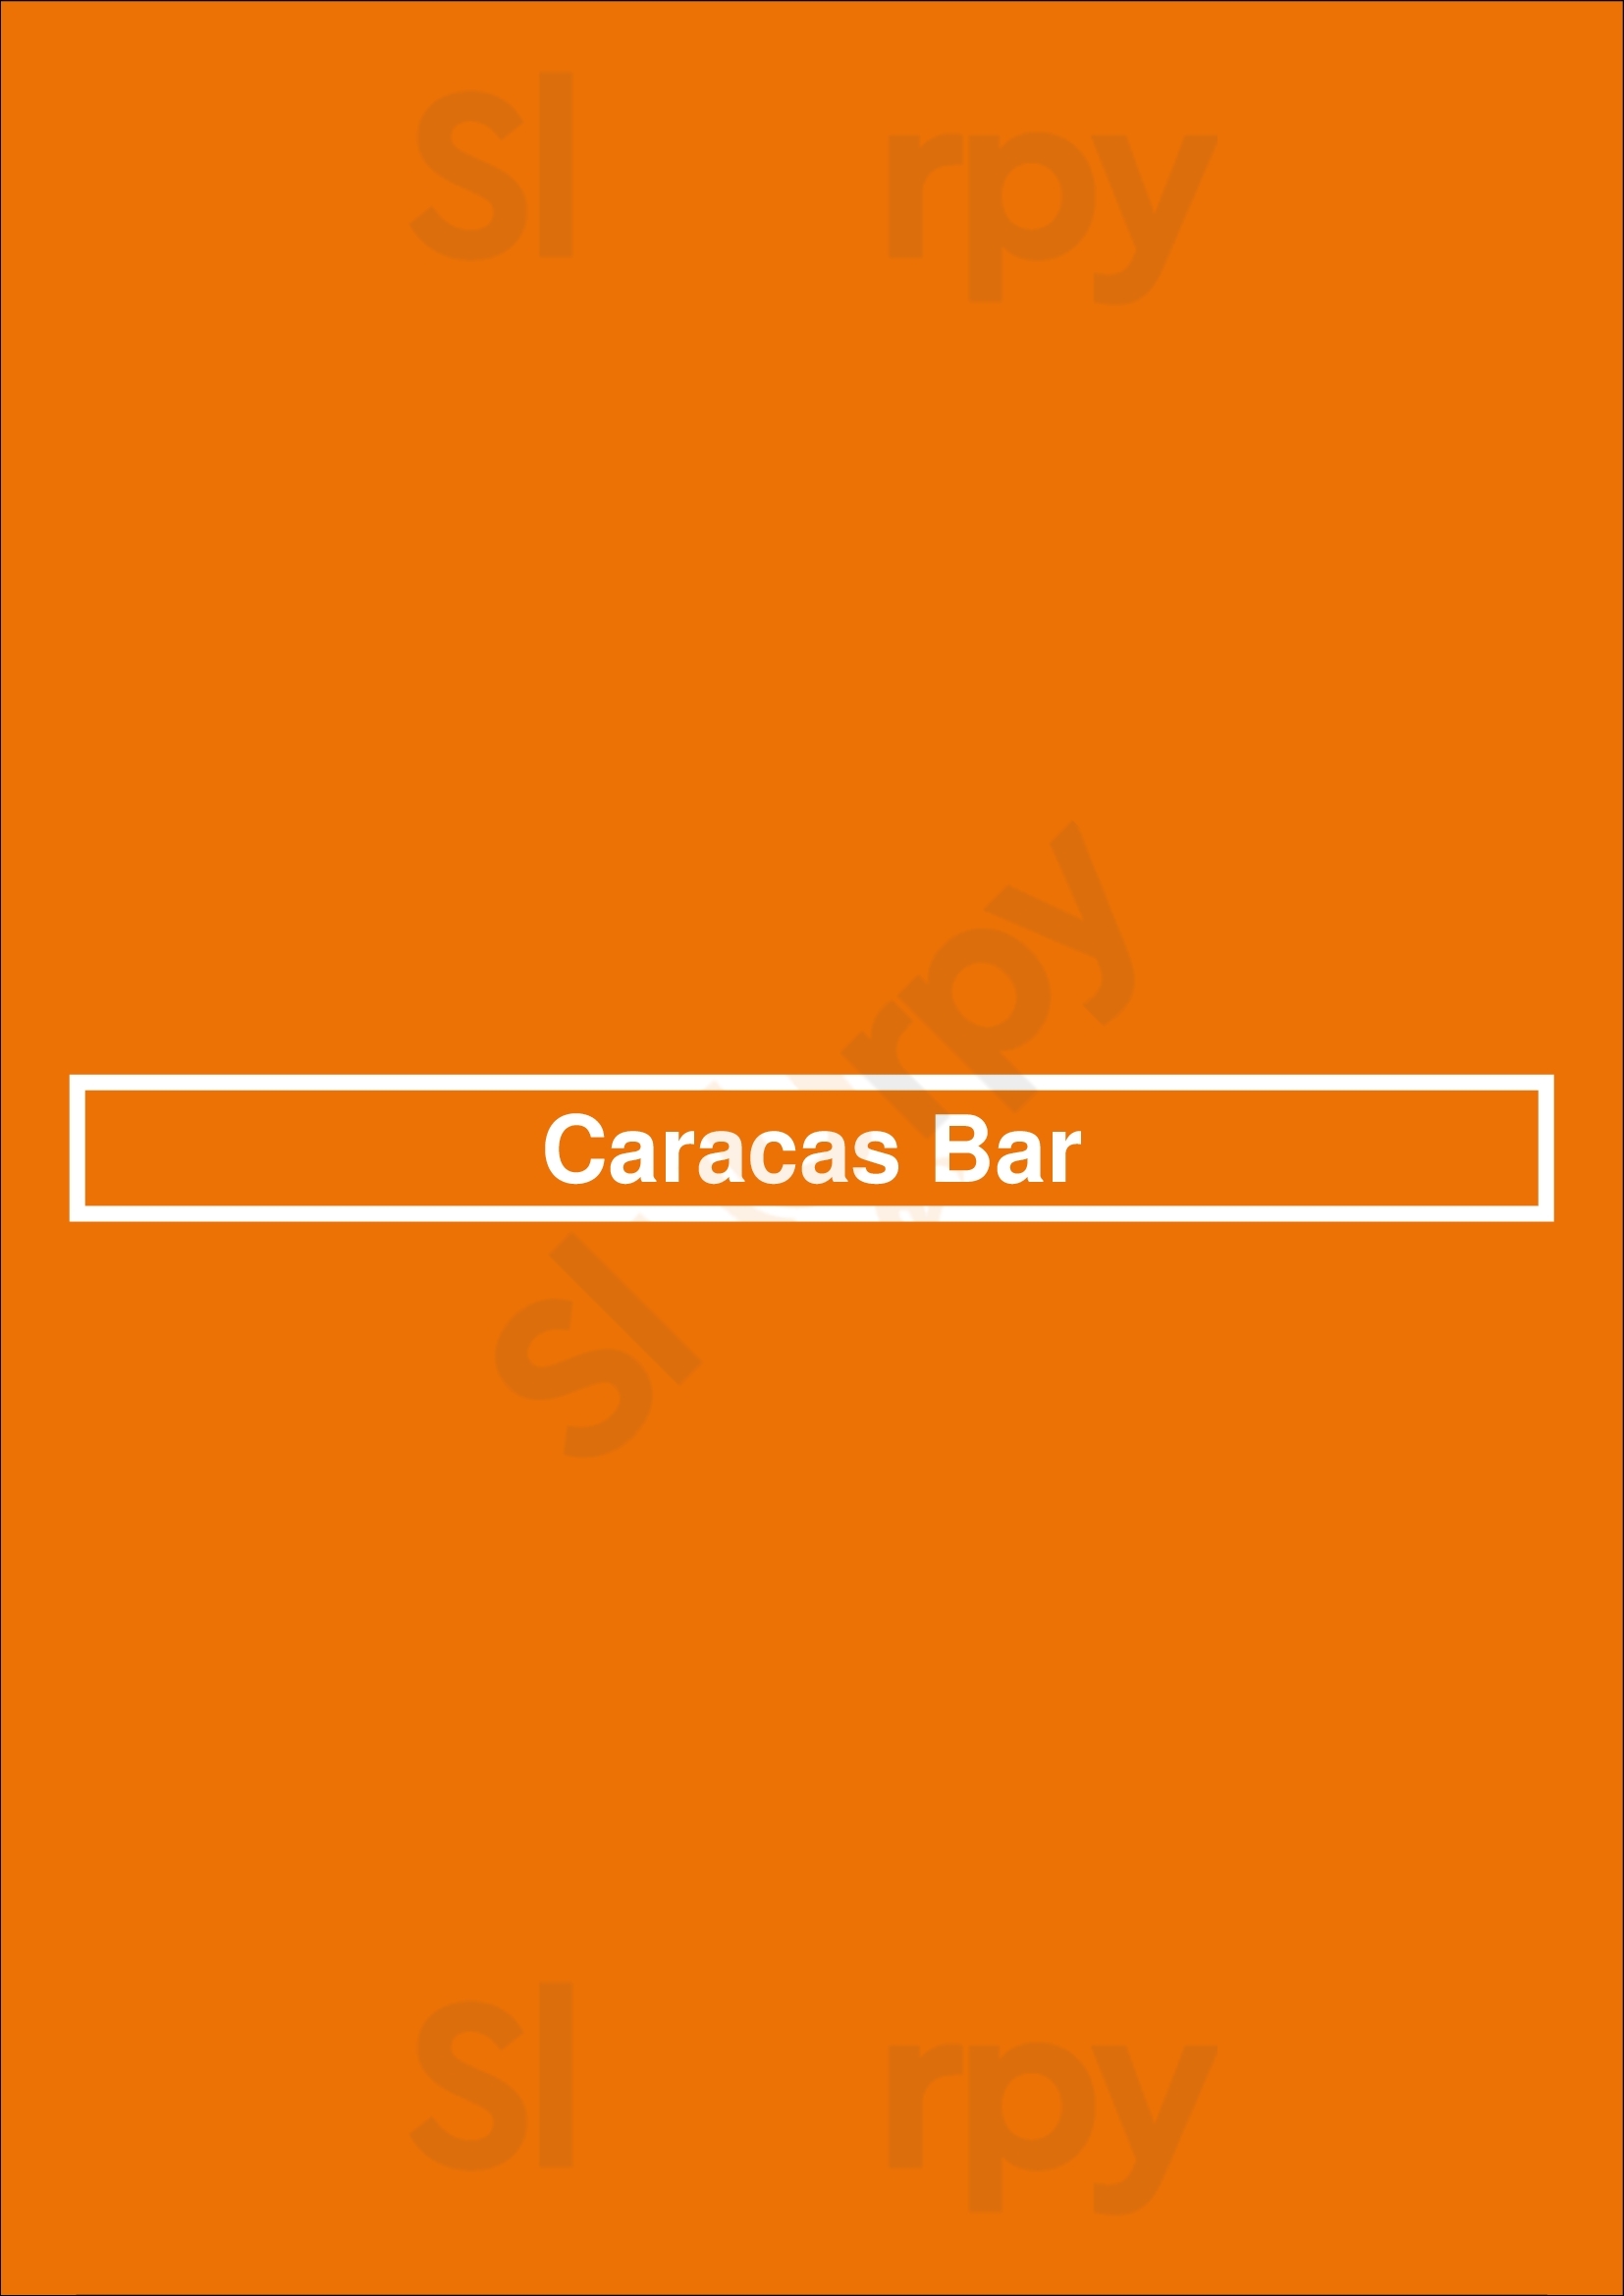 Caracas Bar Buenos Aires Menu - 1